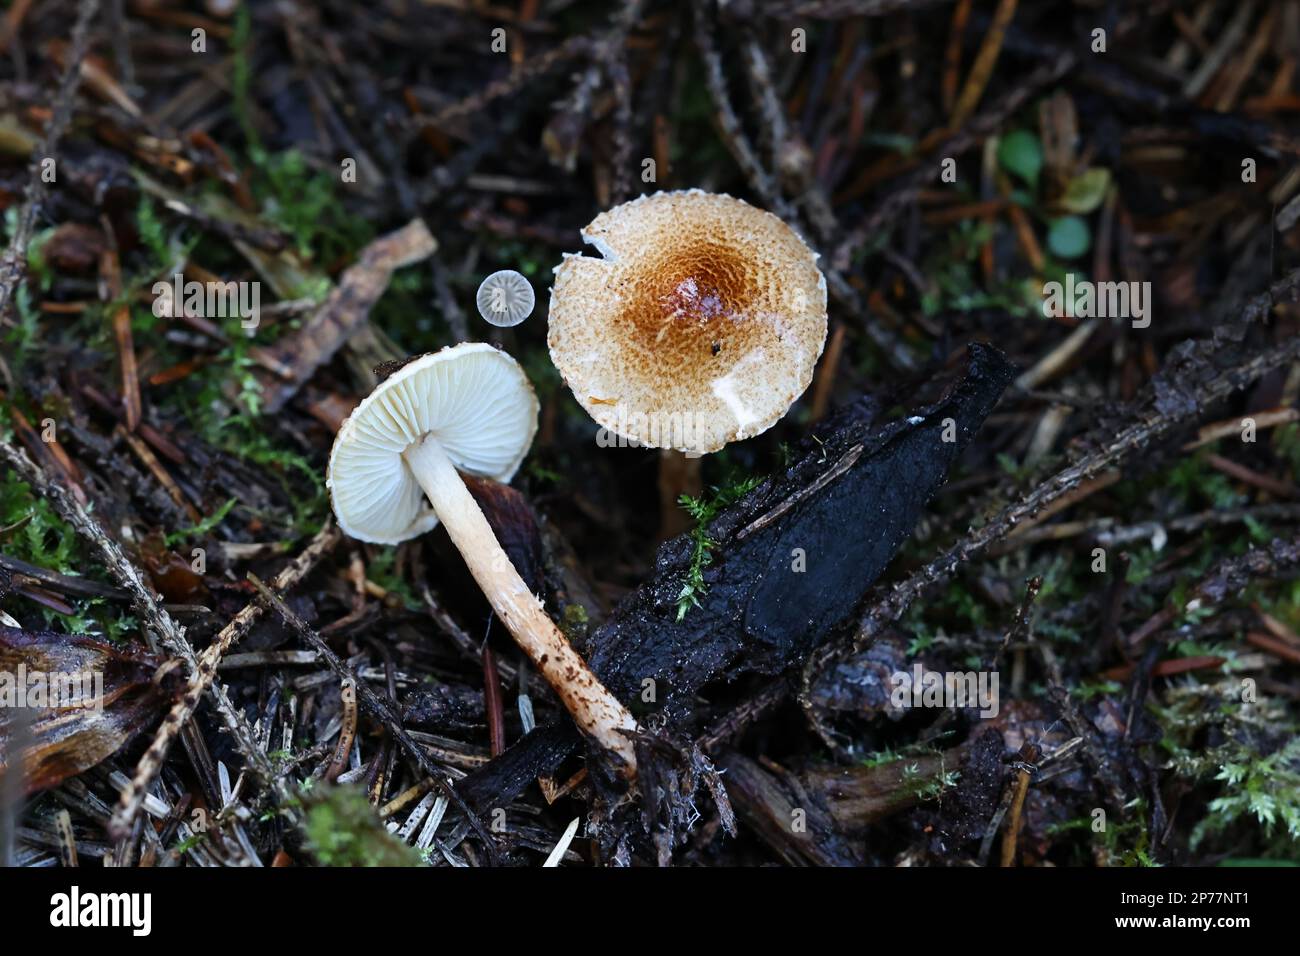 Lepiota castanea, allgemein bekannt als Kastaniendapperling, wildgiftiger Pilz aus Finnland Stockfoto